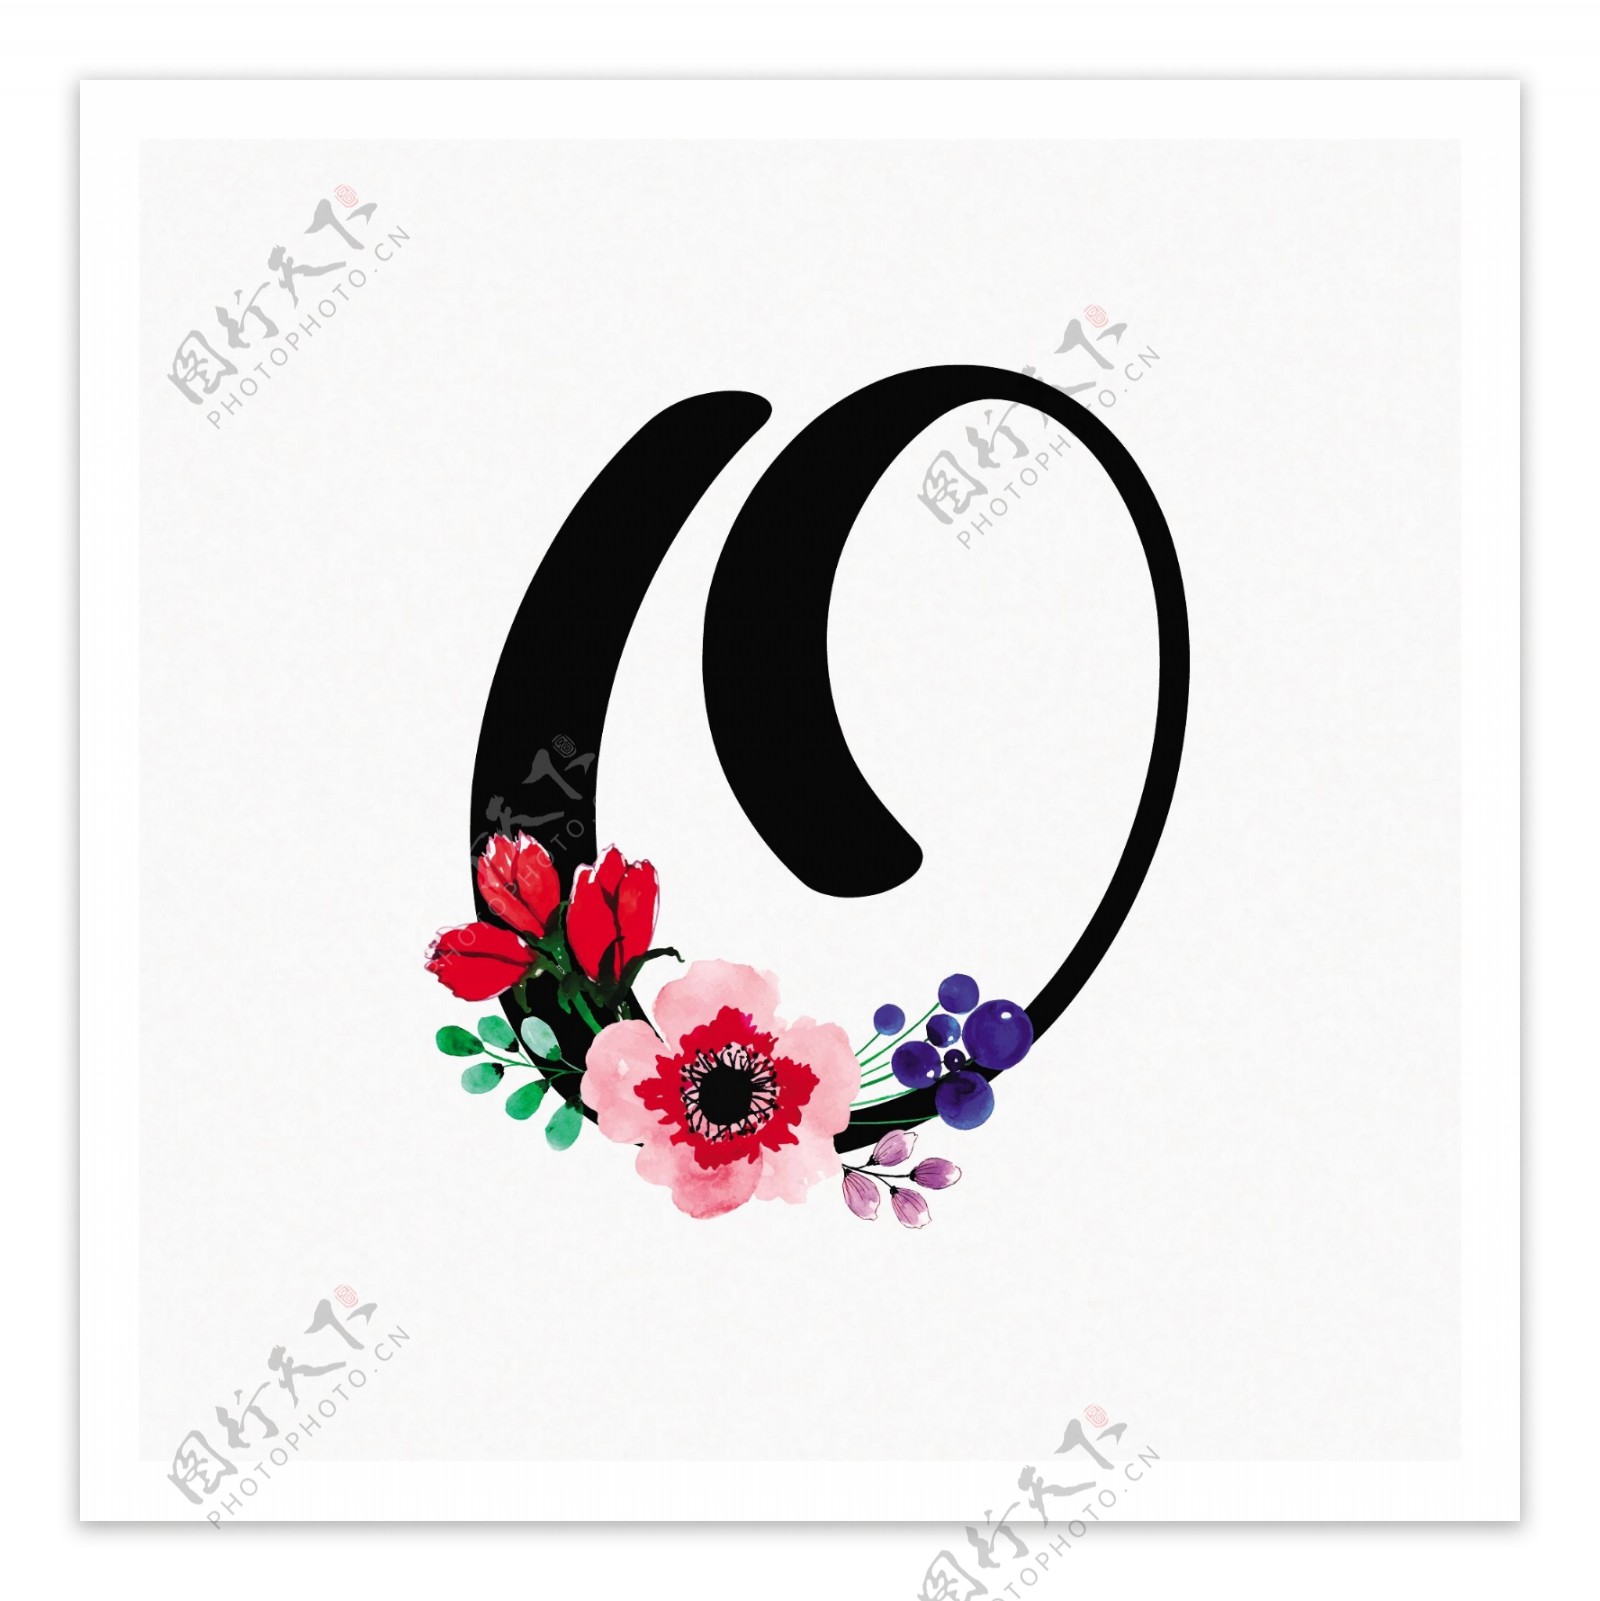 抽象的o形状和花朵logo模板